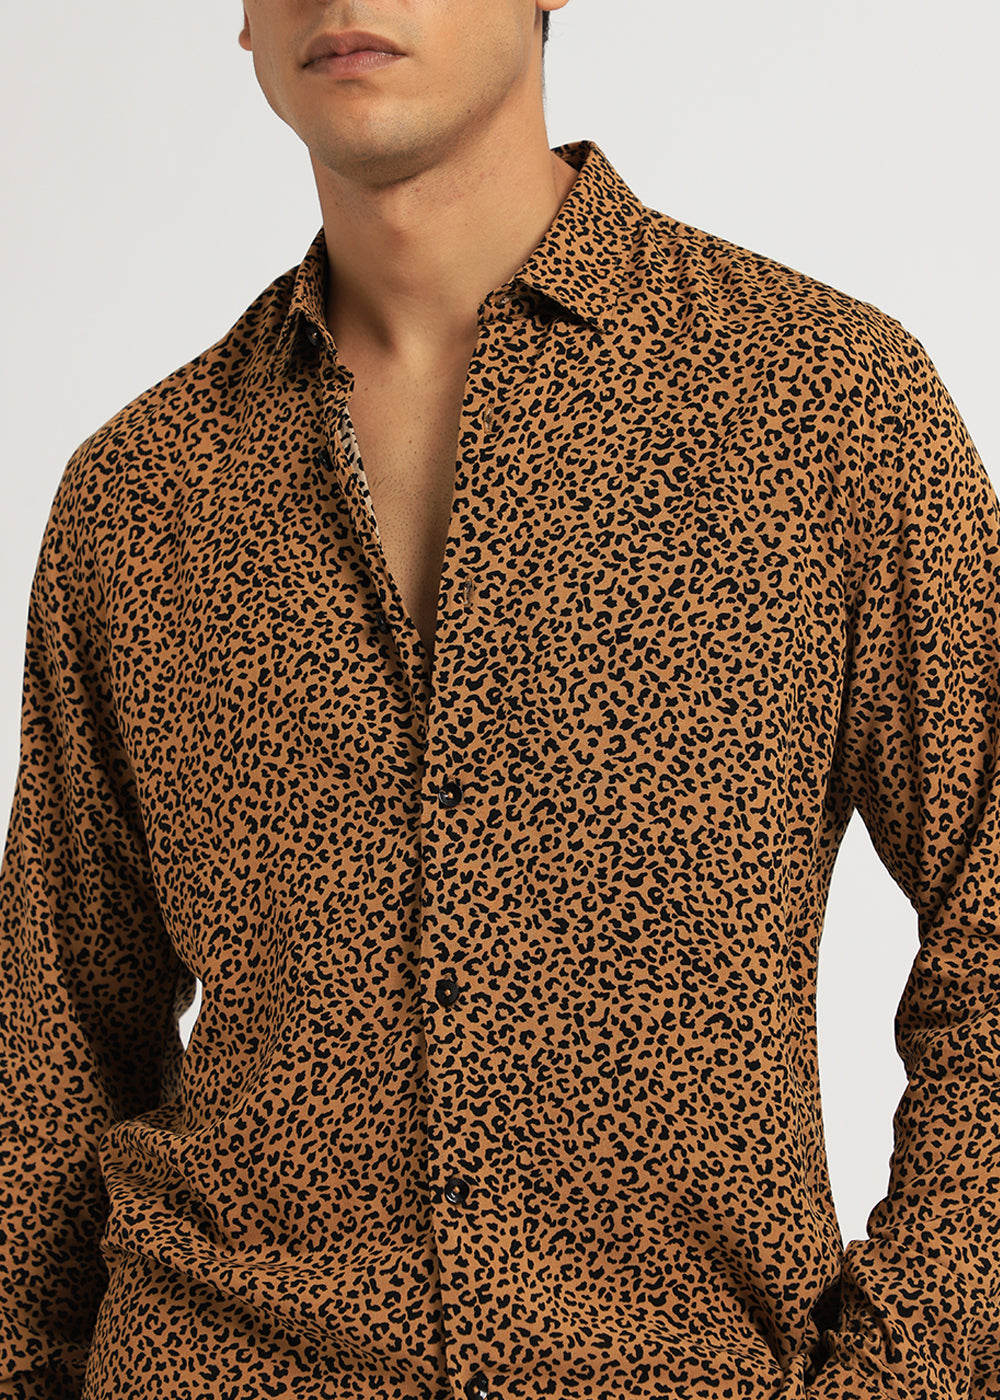 Black Panthera Print Full sleeve shirt